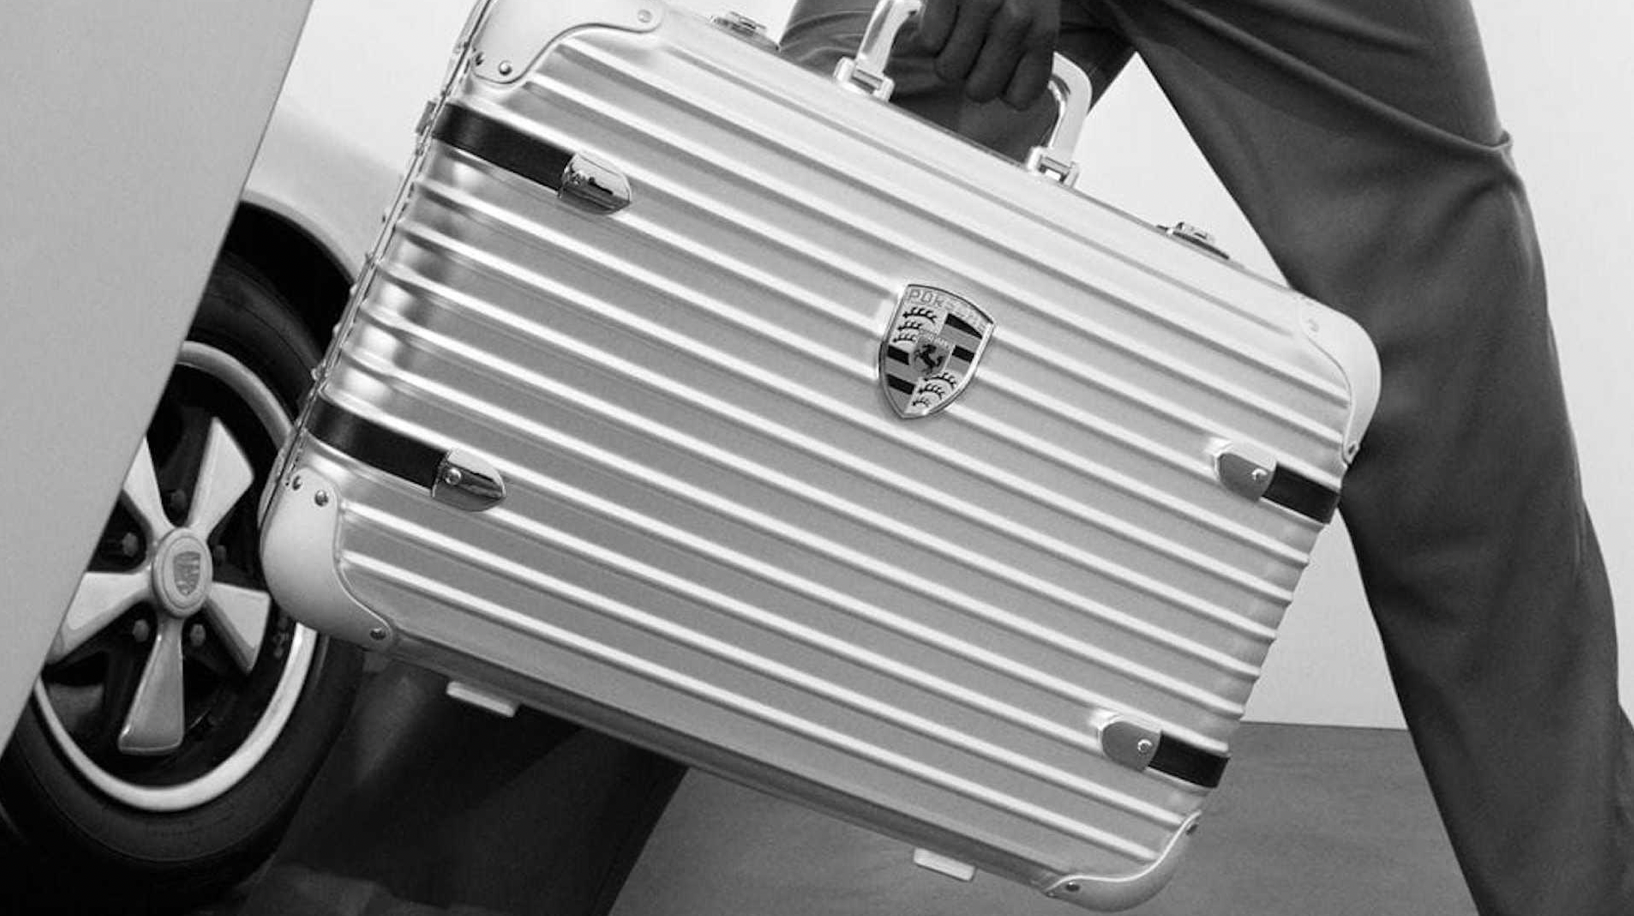 德国奢侈旅行箱品牌Rimowa与保时捷联名推出限量款手提箱Pepita